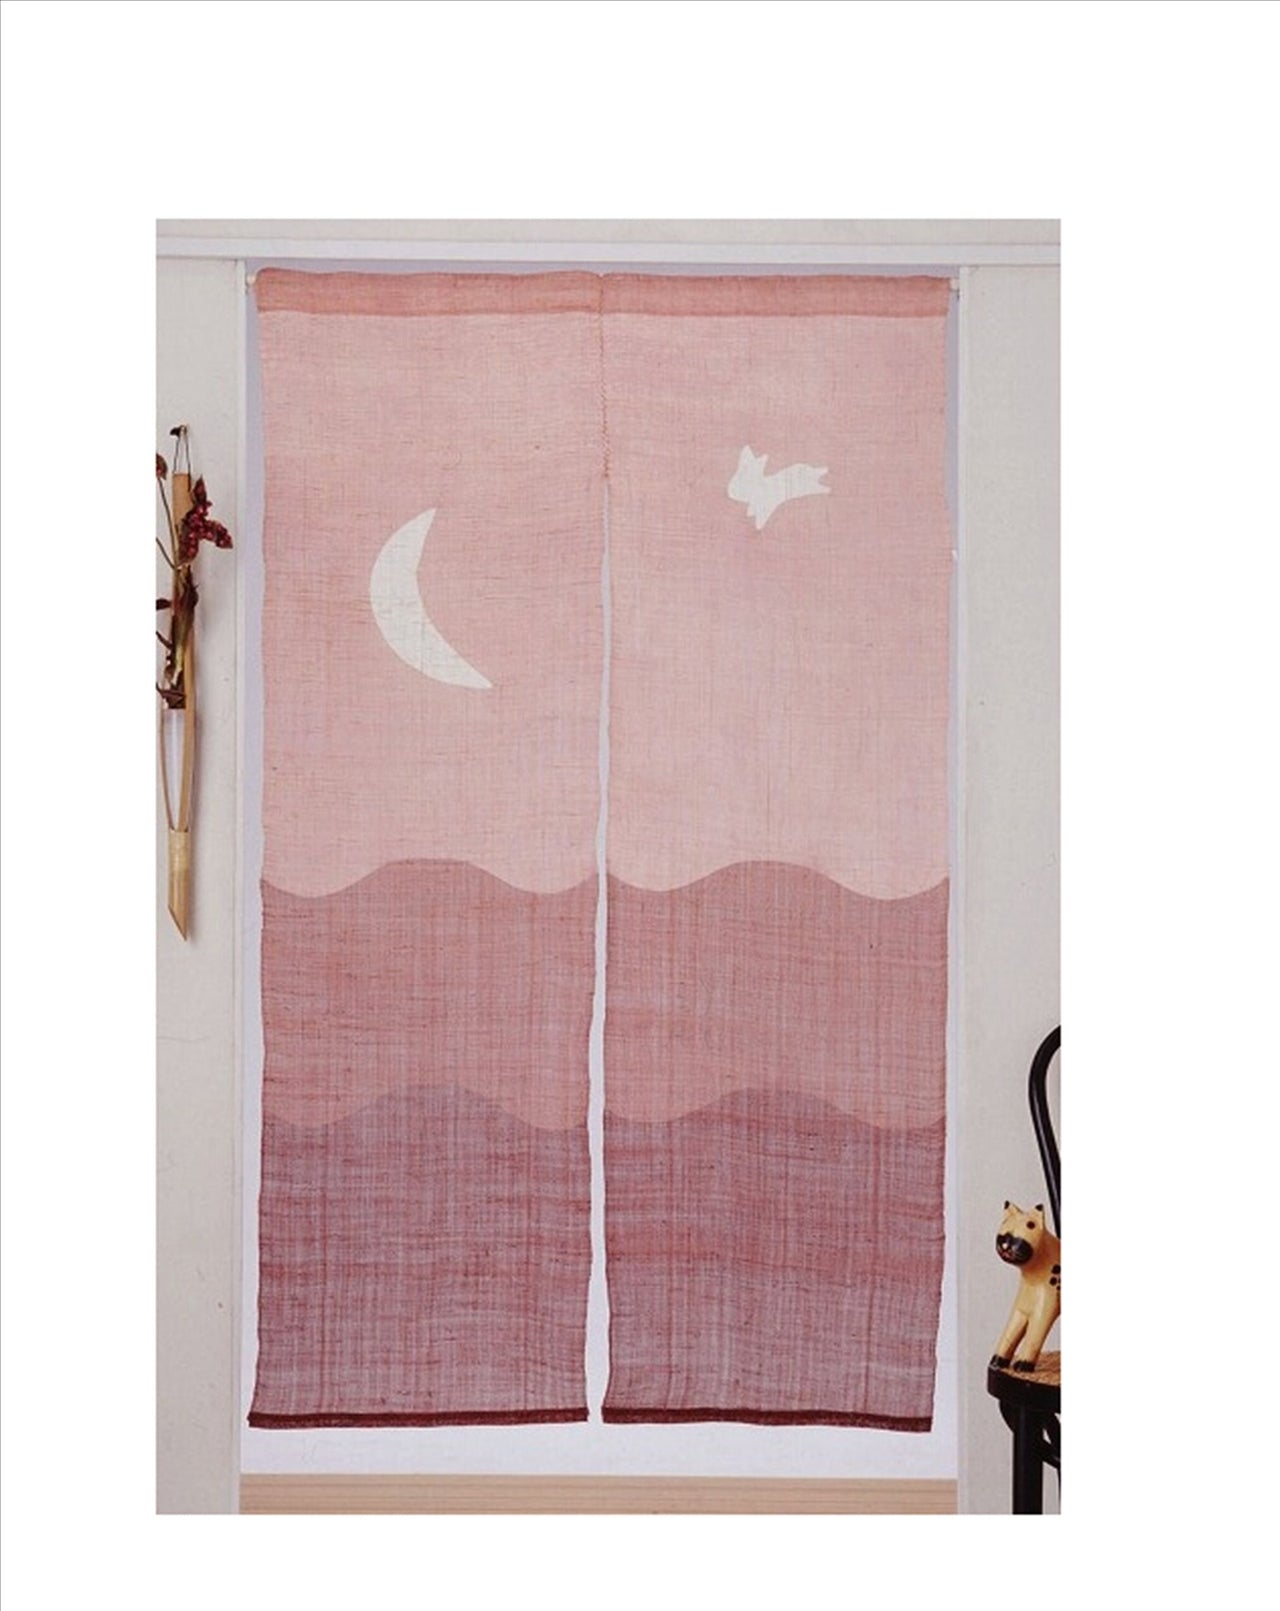 100％ Linen Hemp Rabbit Moon Japanese art Modern tapestry Kawaii 90×150cm Noren door curtain Wall hanging